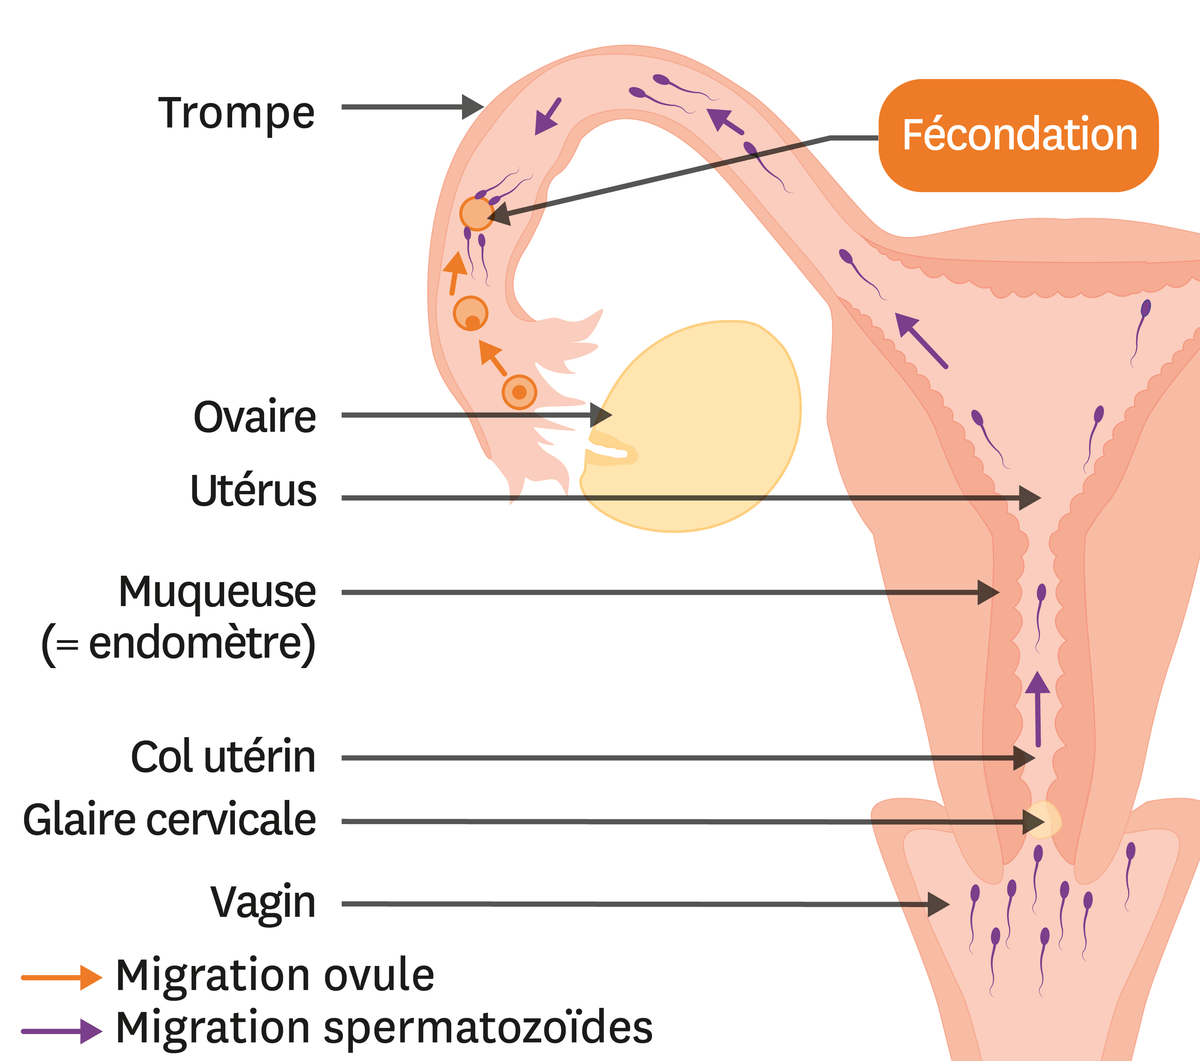 Le trajet des cellules reproductrices jusqu'au lieu de la fécondation.